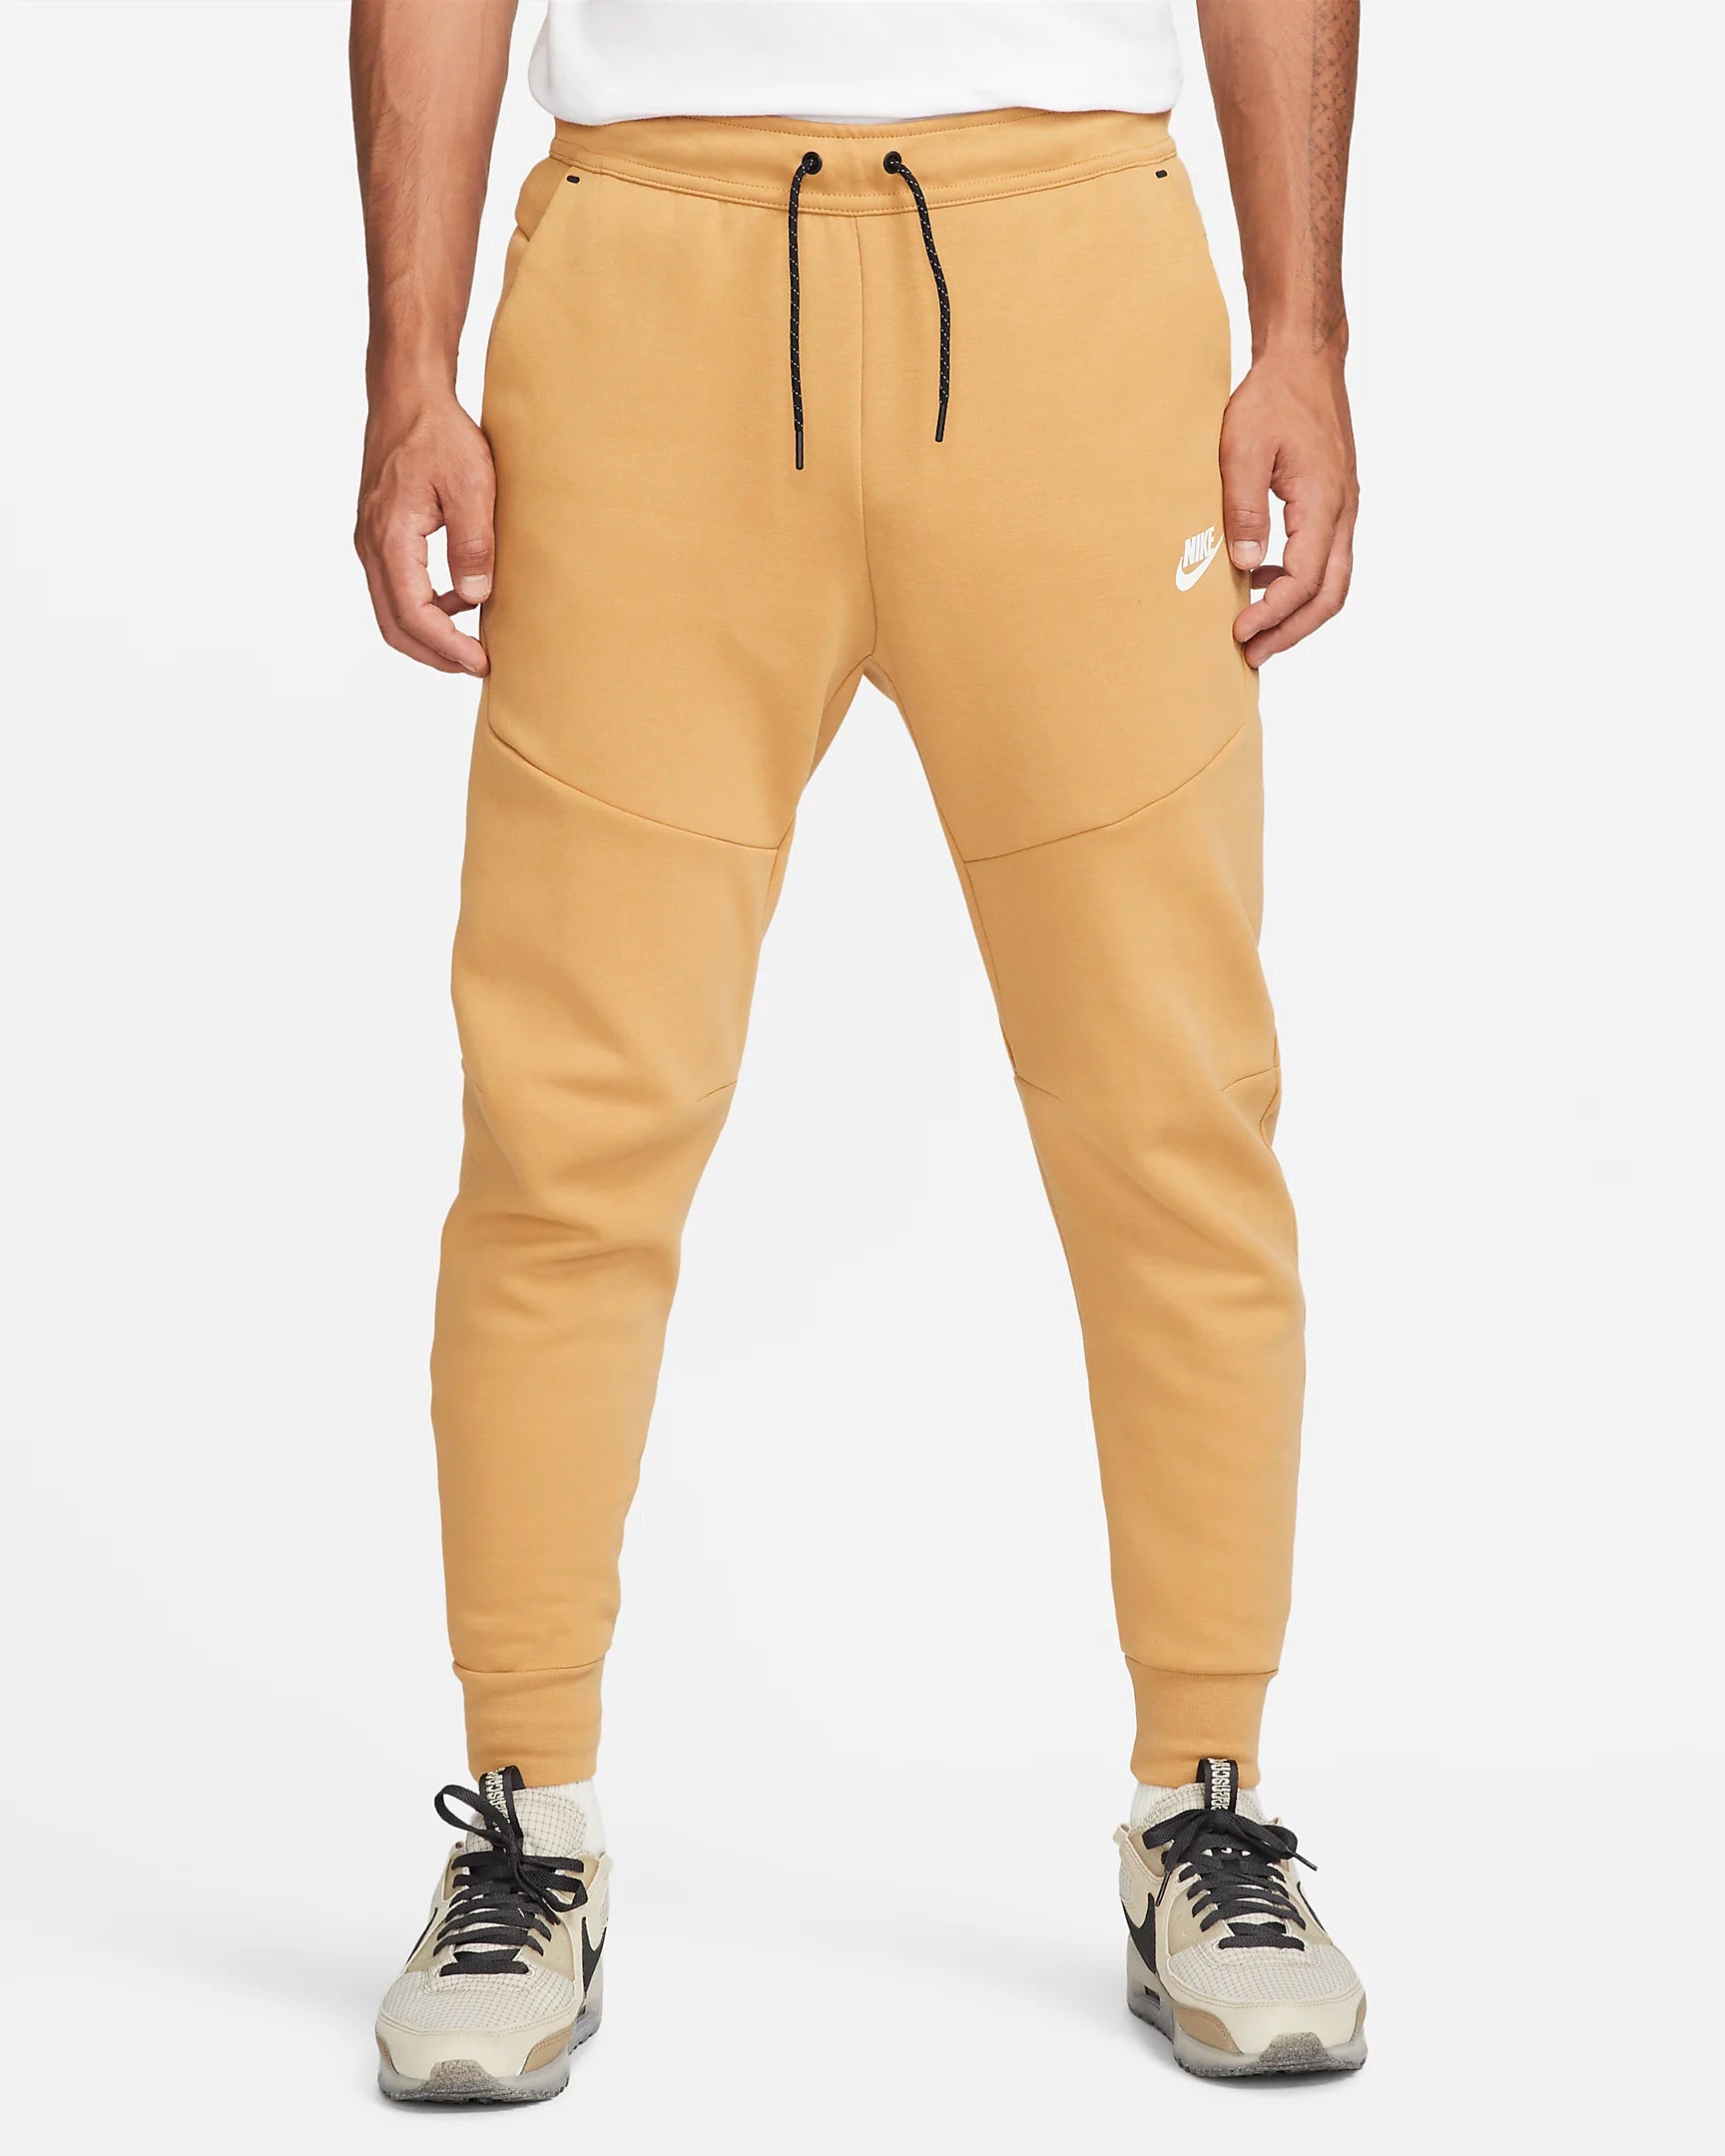 Pantalon jogging Nike Tech Fleece - Beige/Noir